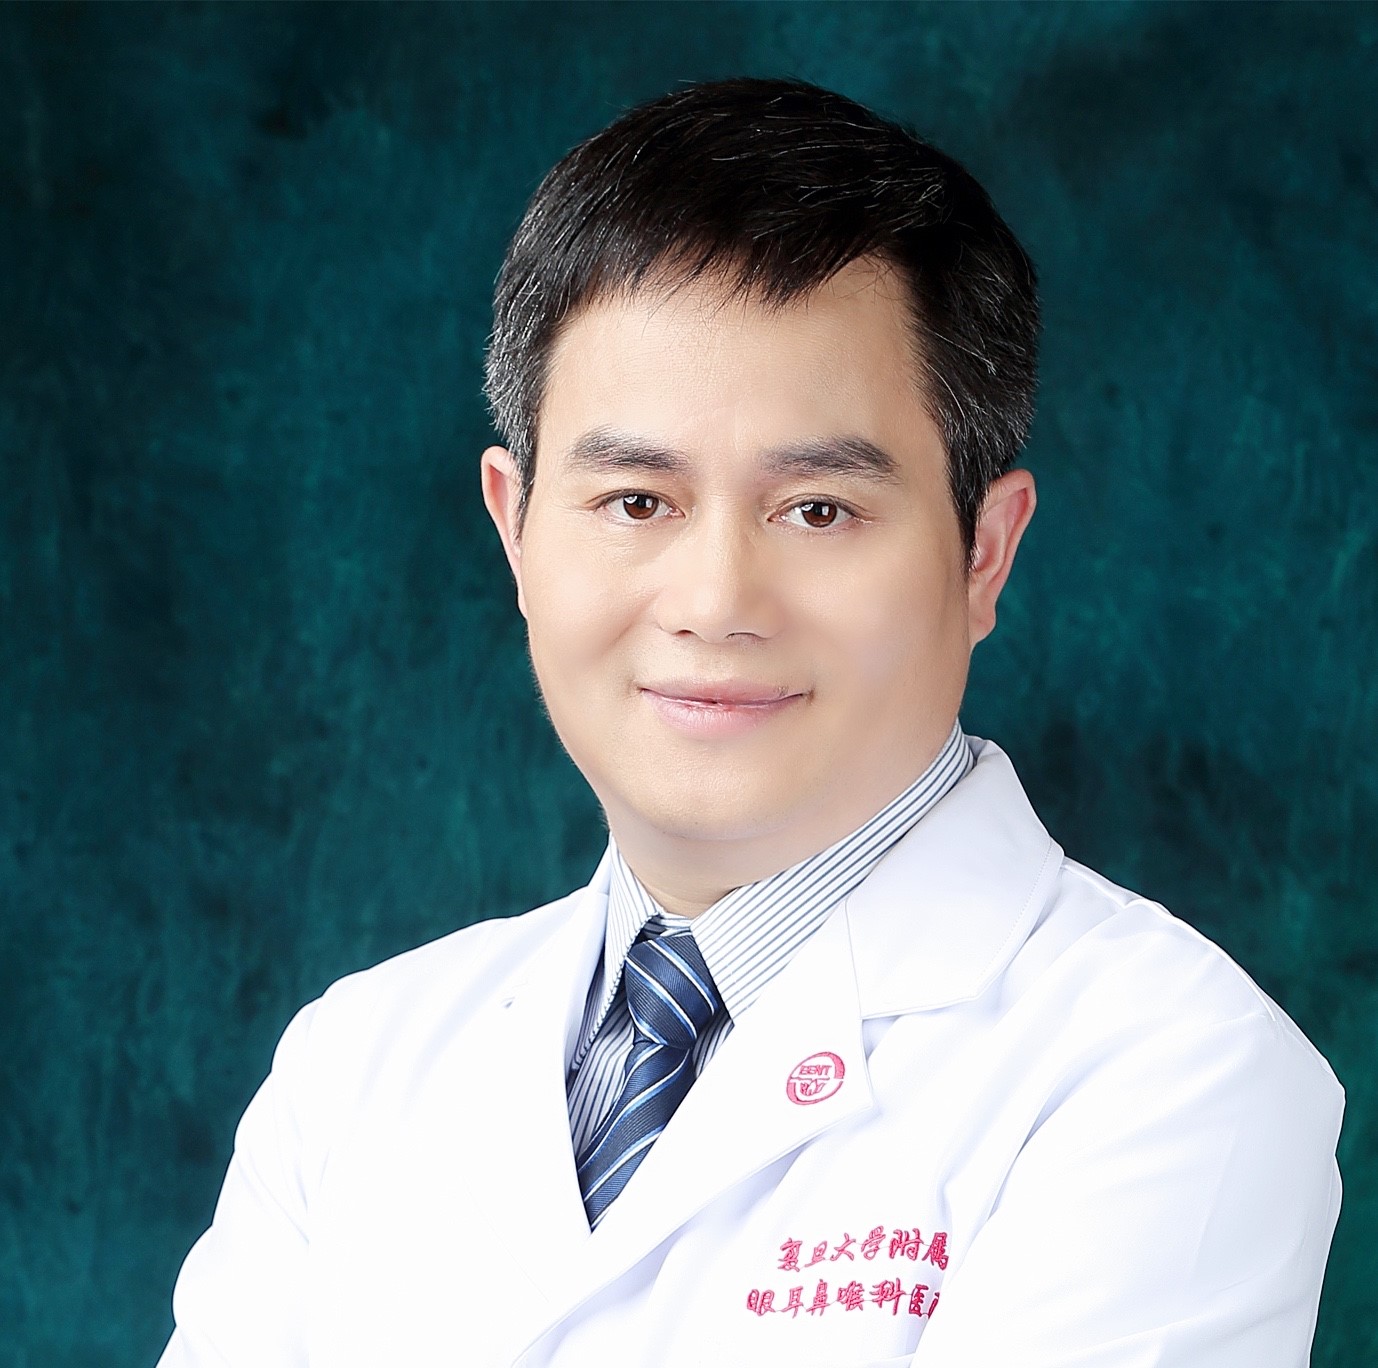 Dr. Yilai Shu